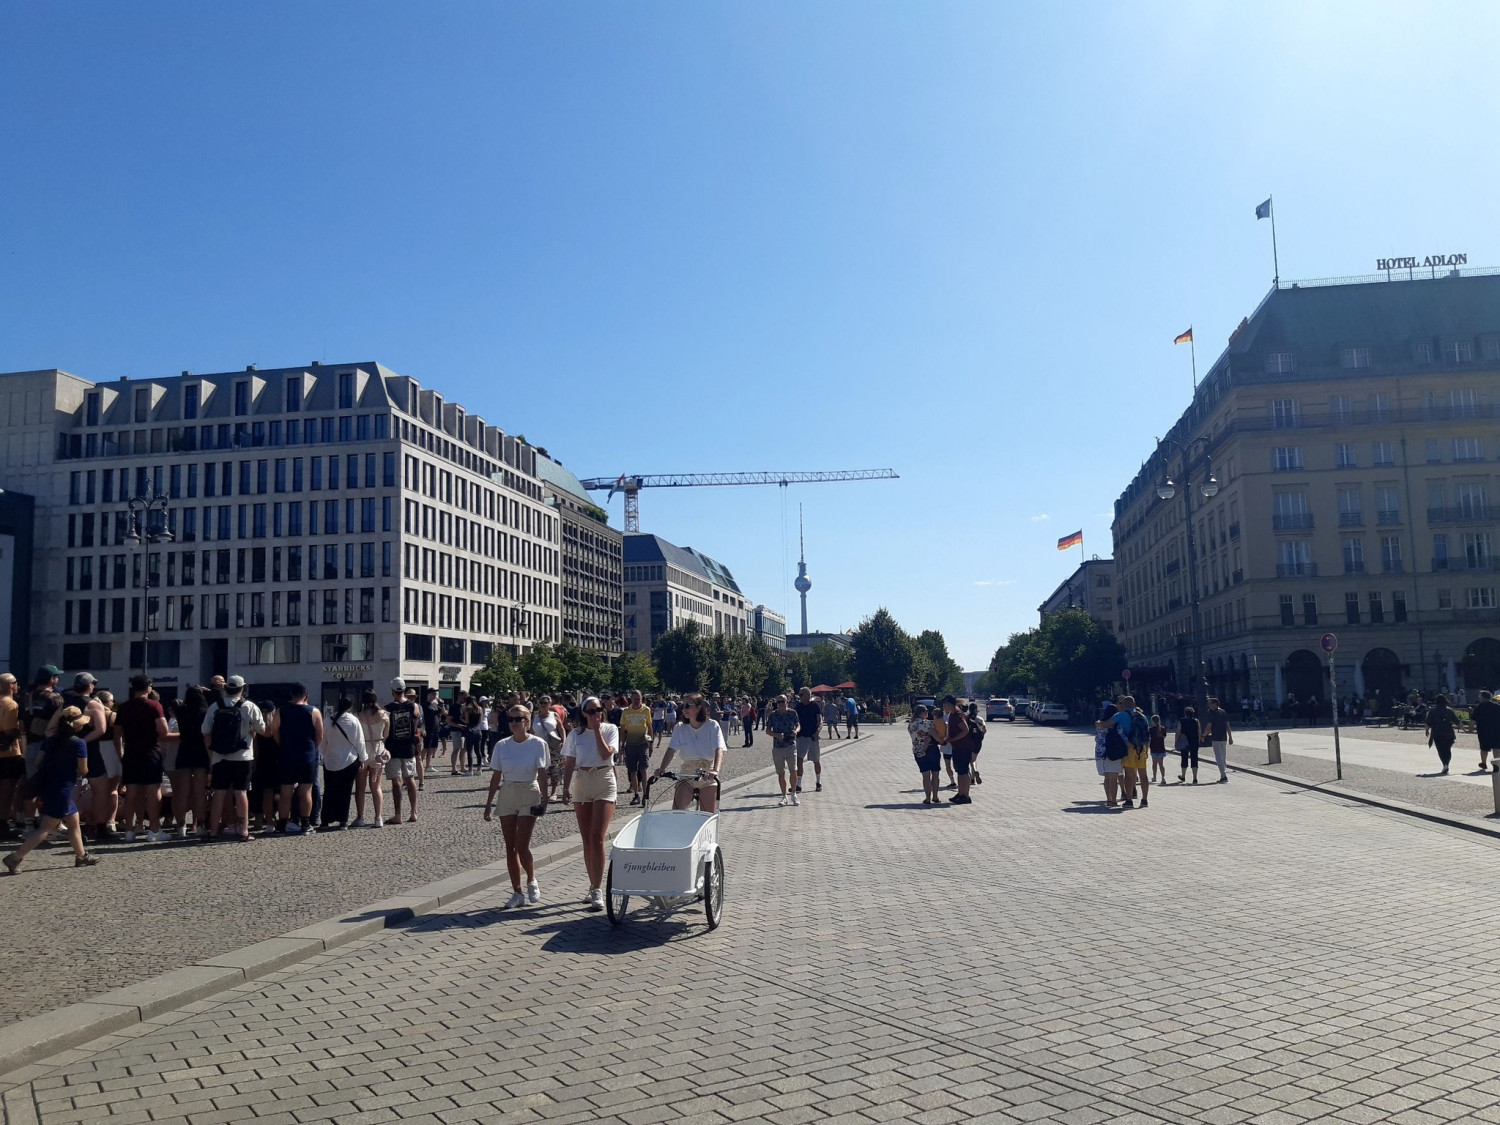 Unter den Linden, đại lộ chính của Đông Berlin dẫn tới Cổng Brandenburg